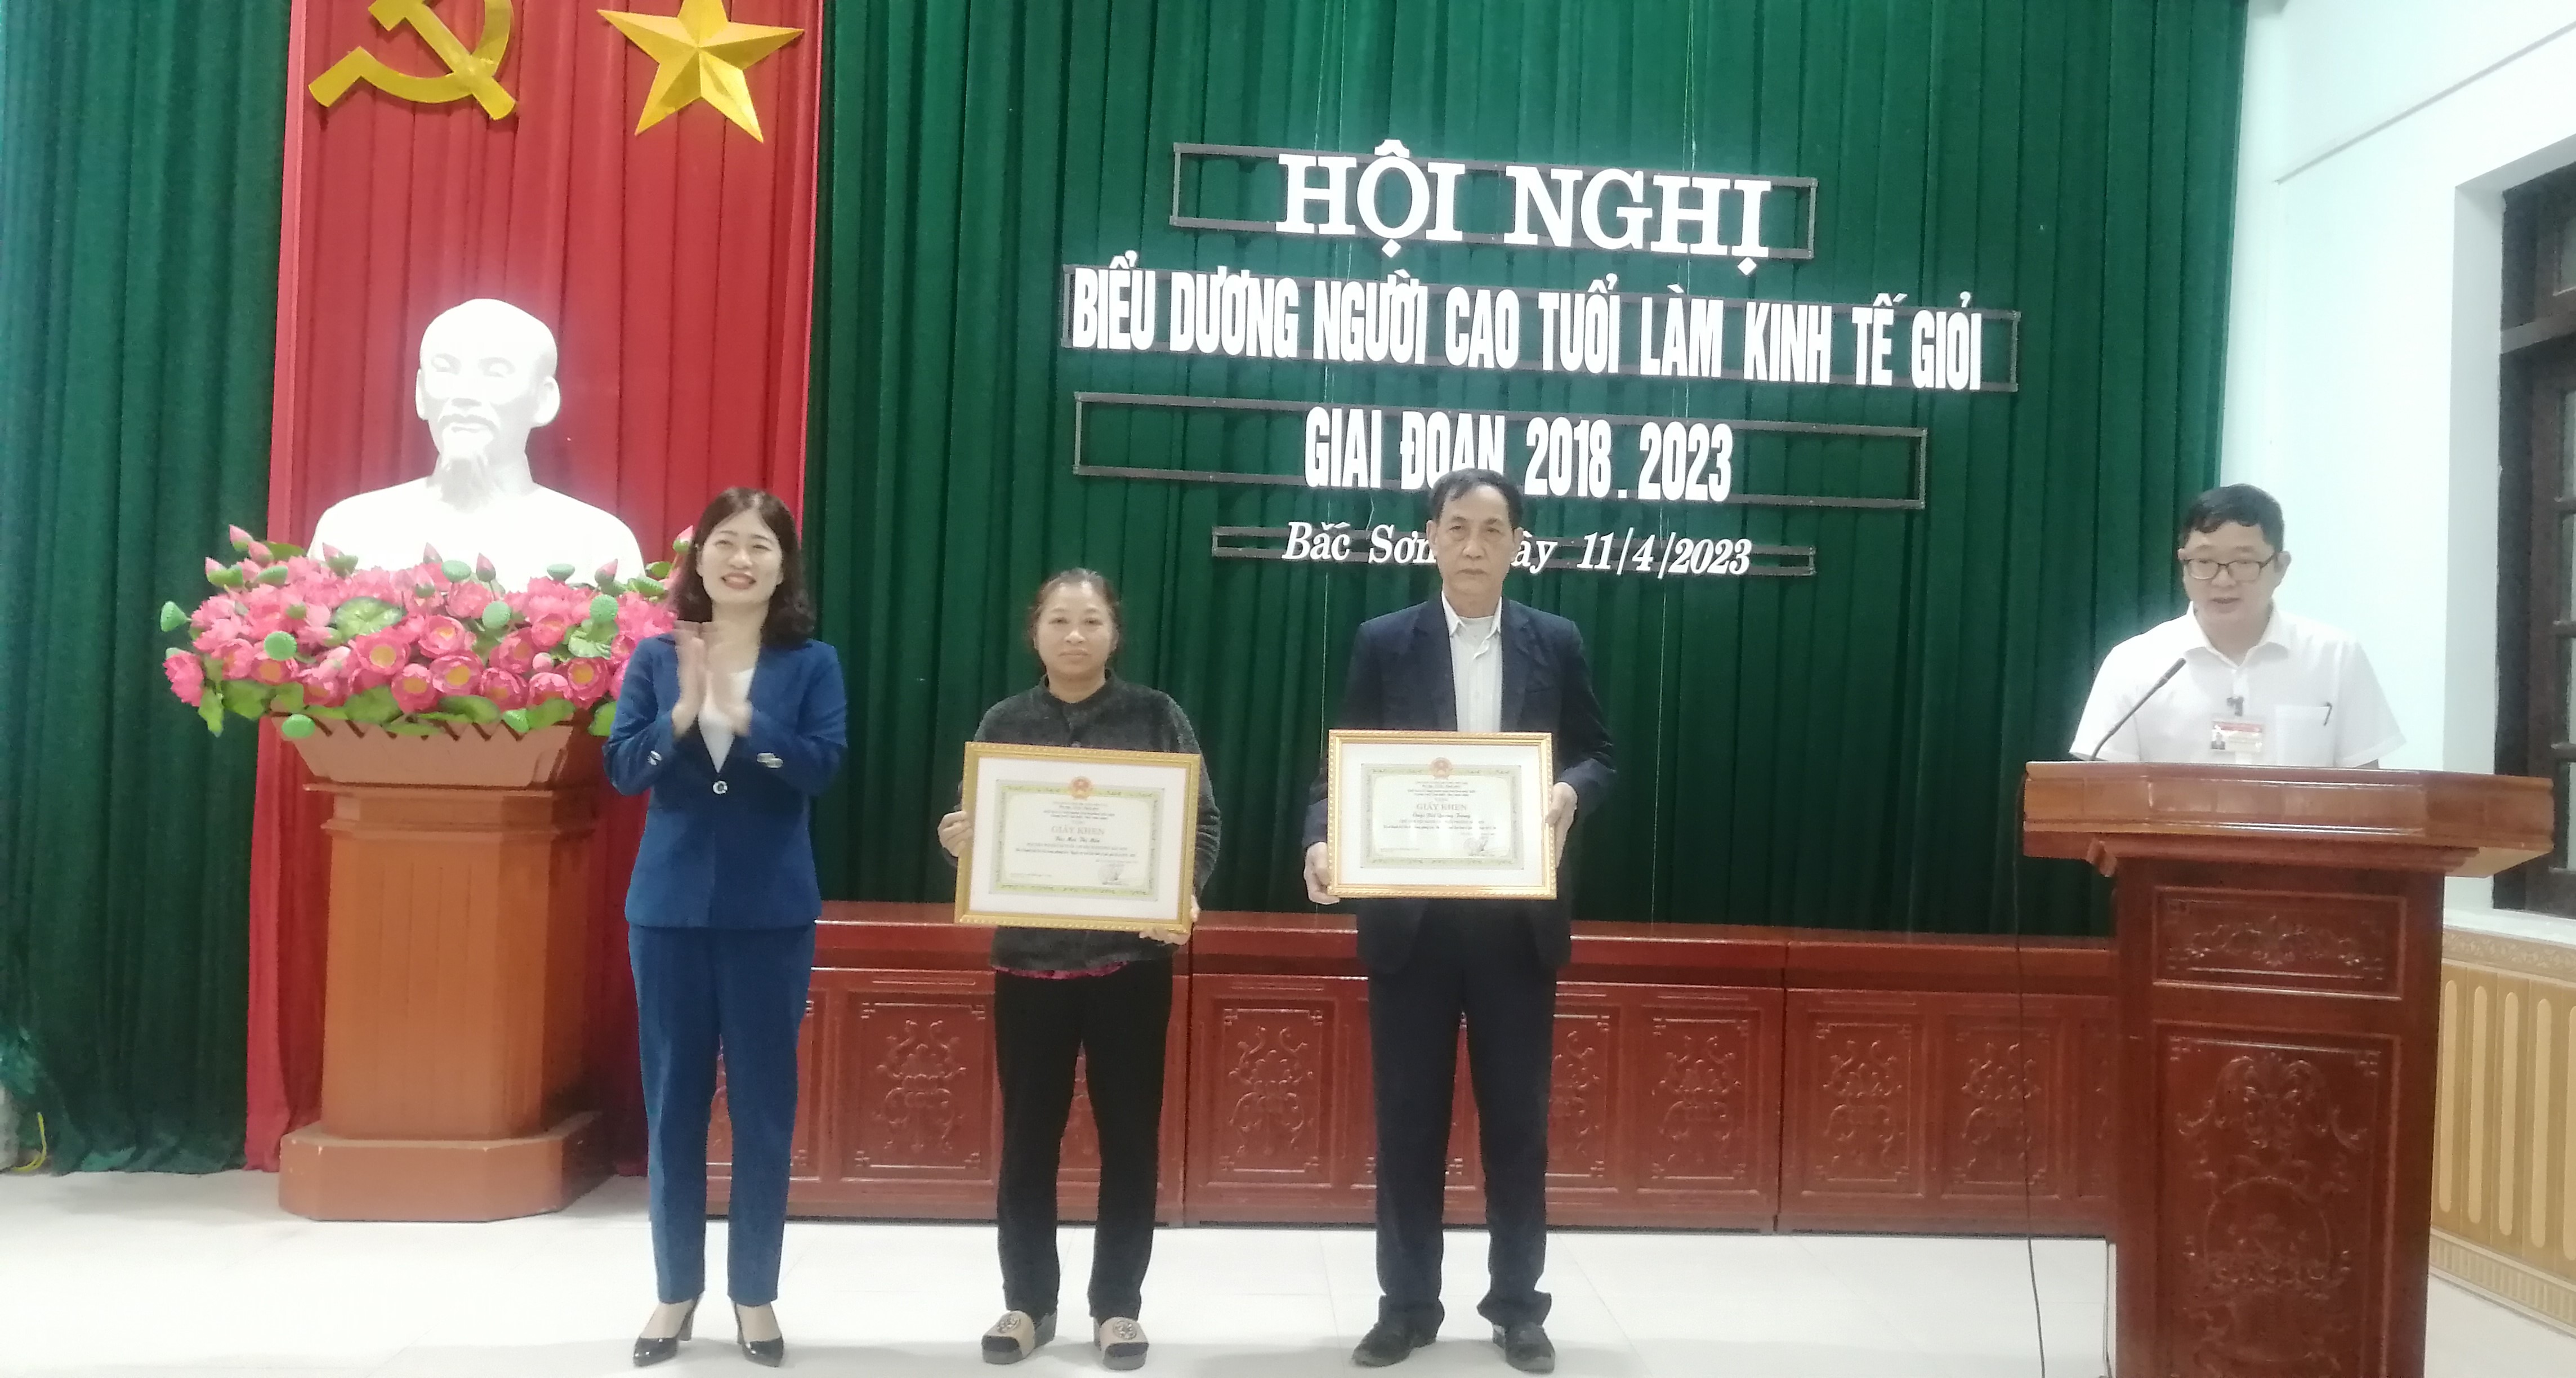 Hội NCT phường Bắc Sơn tổ chức hội nghị Biểu dương Người cao tuổi làm kinh tế giỏi giai đoạn 2018-2023